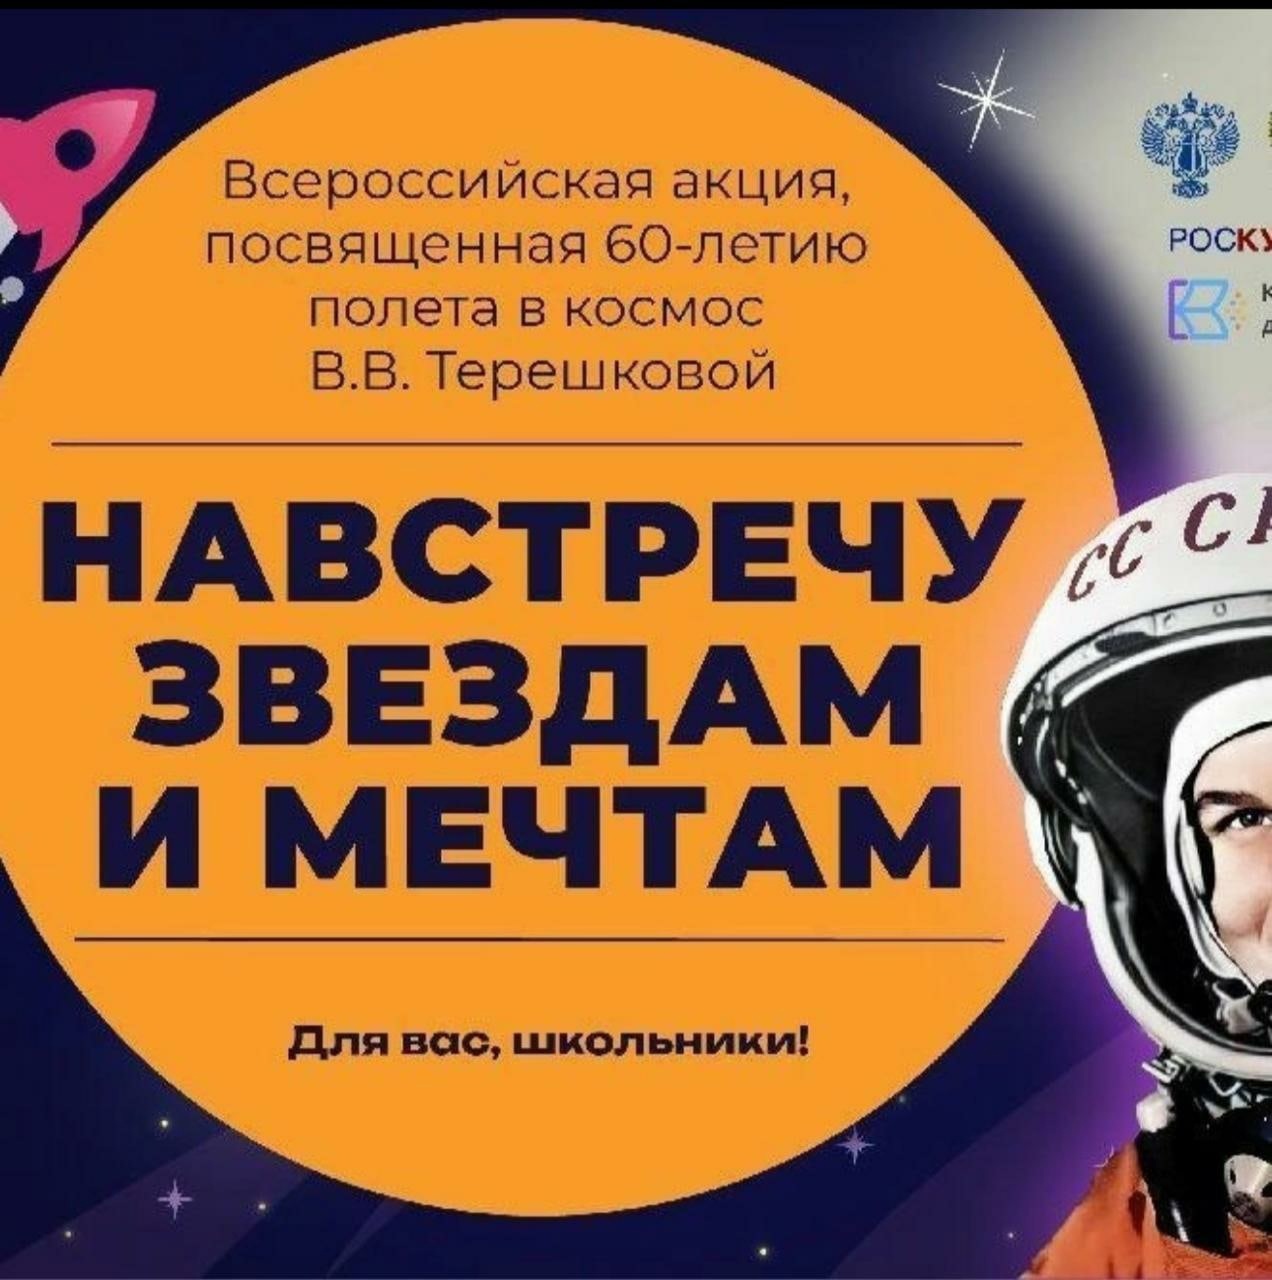 В этом году исполняется 60лет первого полета женщины-космонавта.Валентина Терешкова-летчик космонавт СССР, позывной «Чайка»,единственная в мире женщина,совершившая космический полет в одиночку..